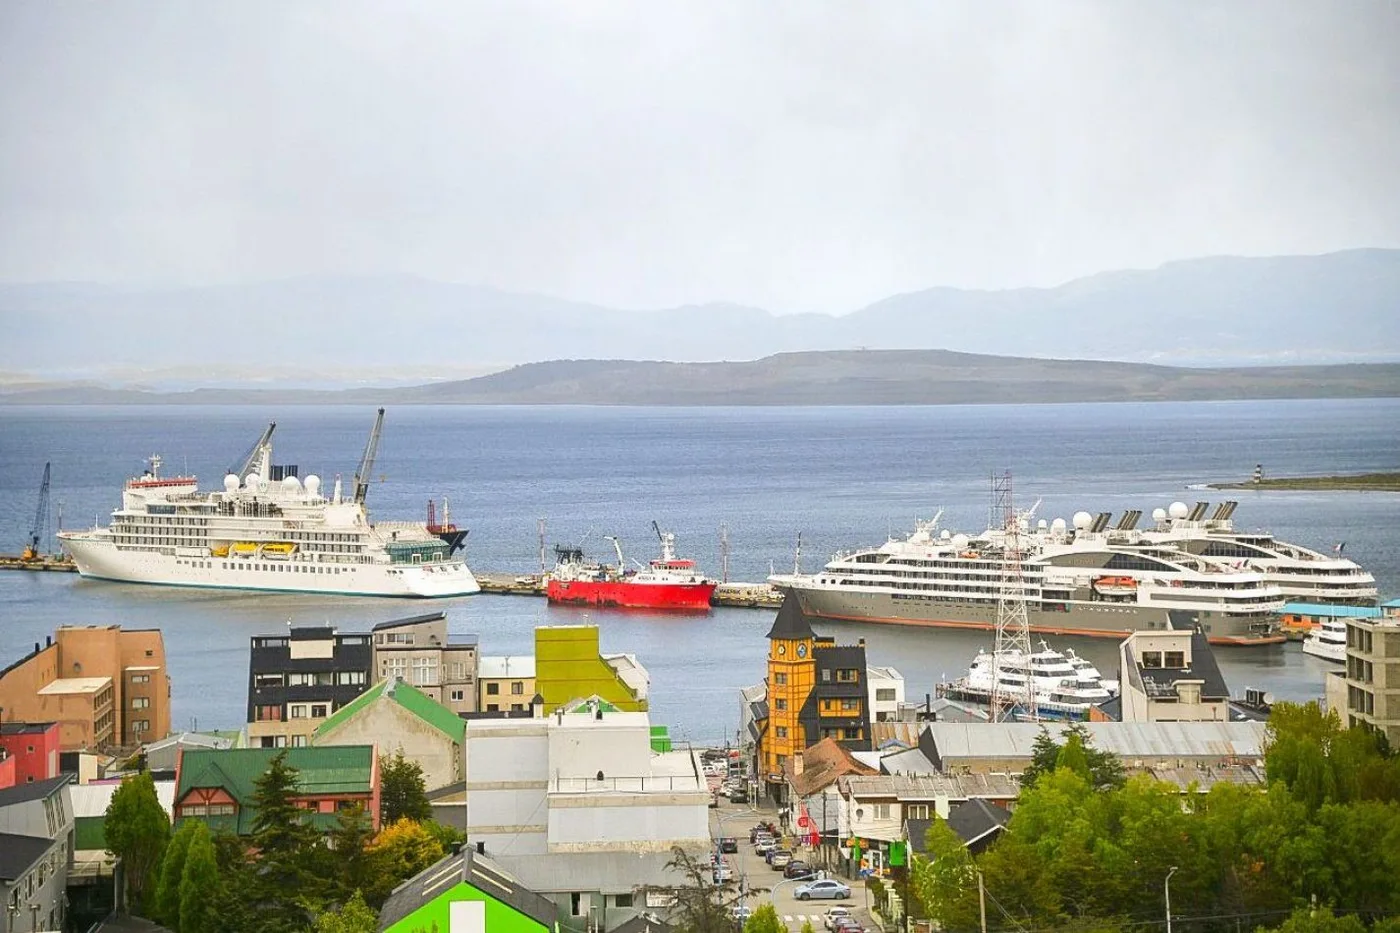 Una de las navieras que trabaja con el puerto de Ushuaia, anunció la suspensión de sus actividades “por insolvencia”.